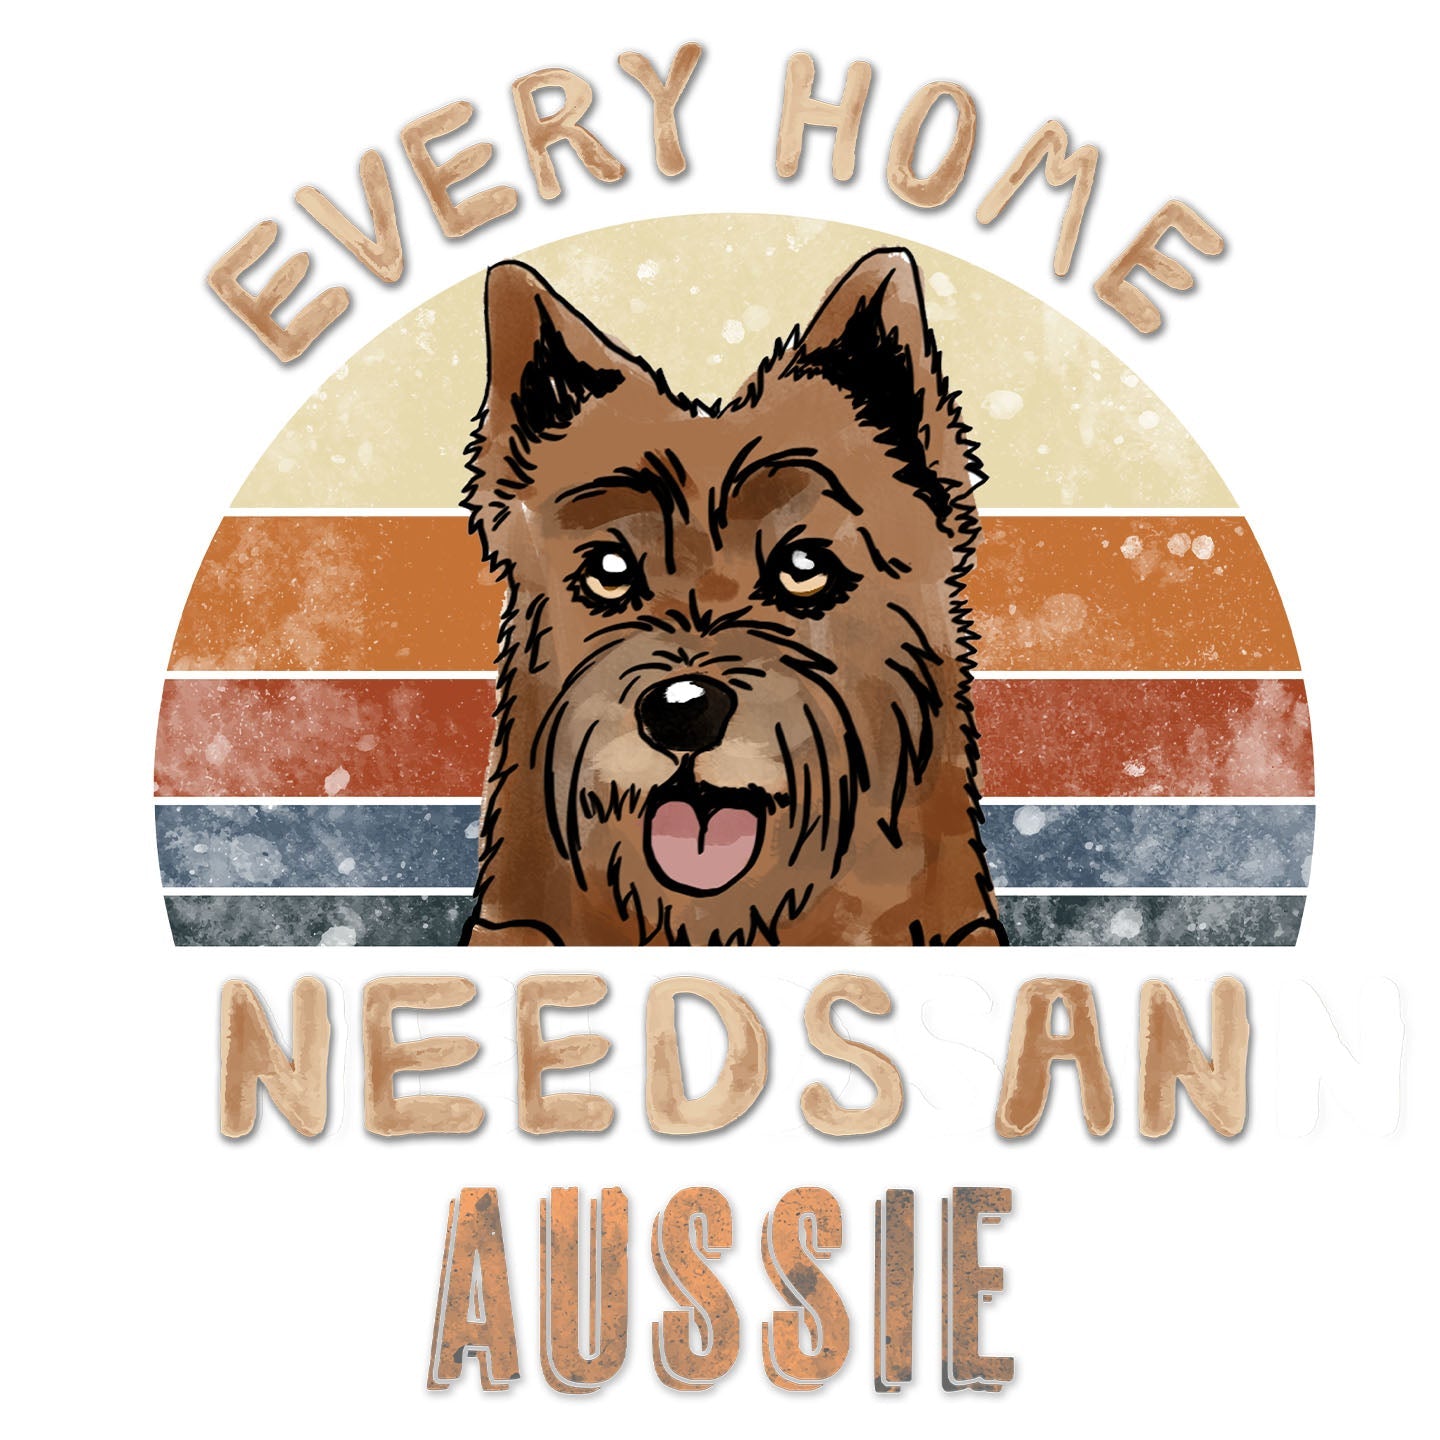 Every Home Needs a Australian Terrier - Women's V-Neck T-Shirt